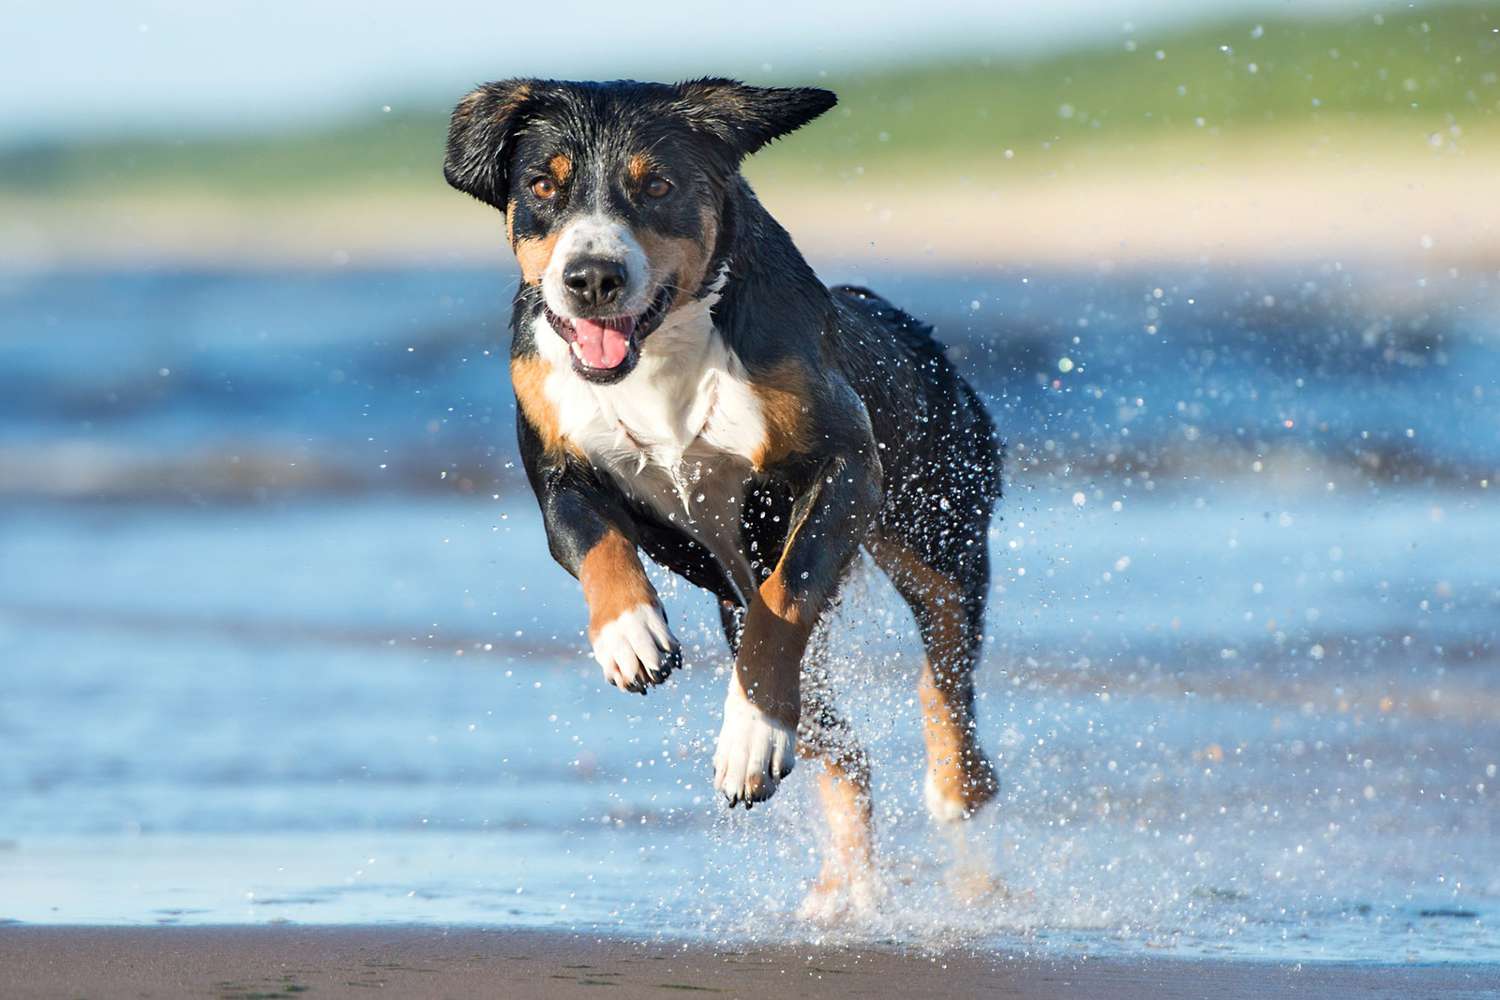 Entlebucher mountain dog running in water